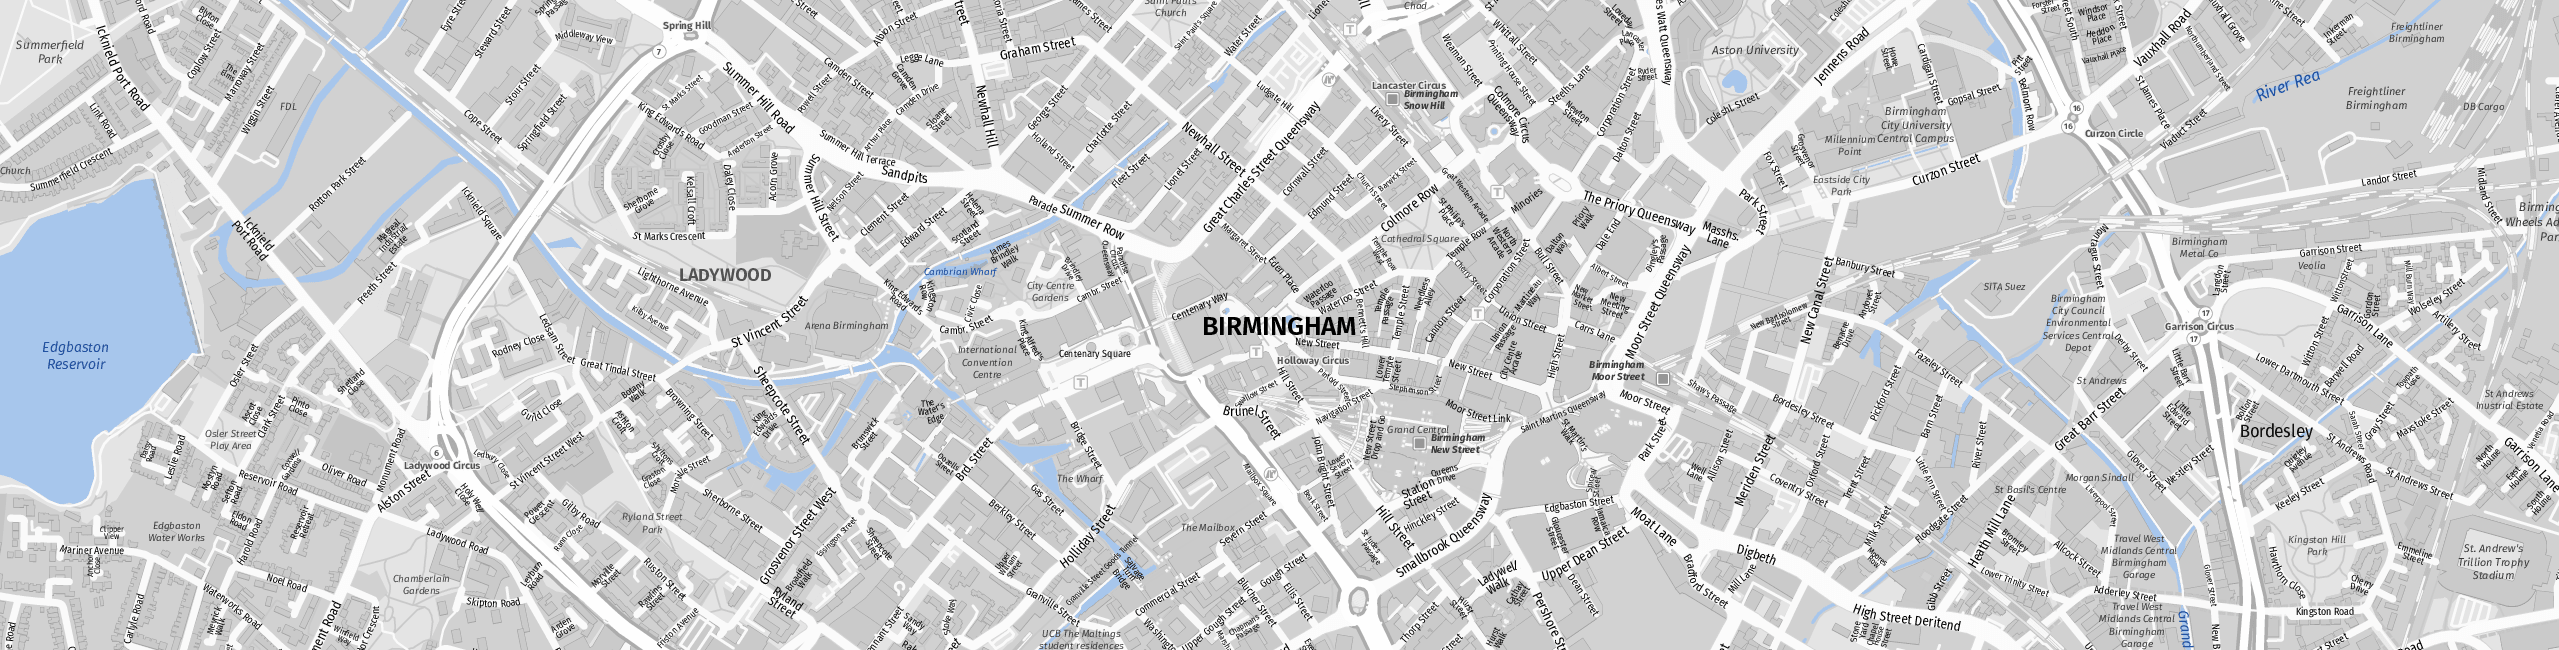 Stadtplan Birmingham zum Downloaden.